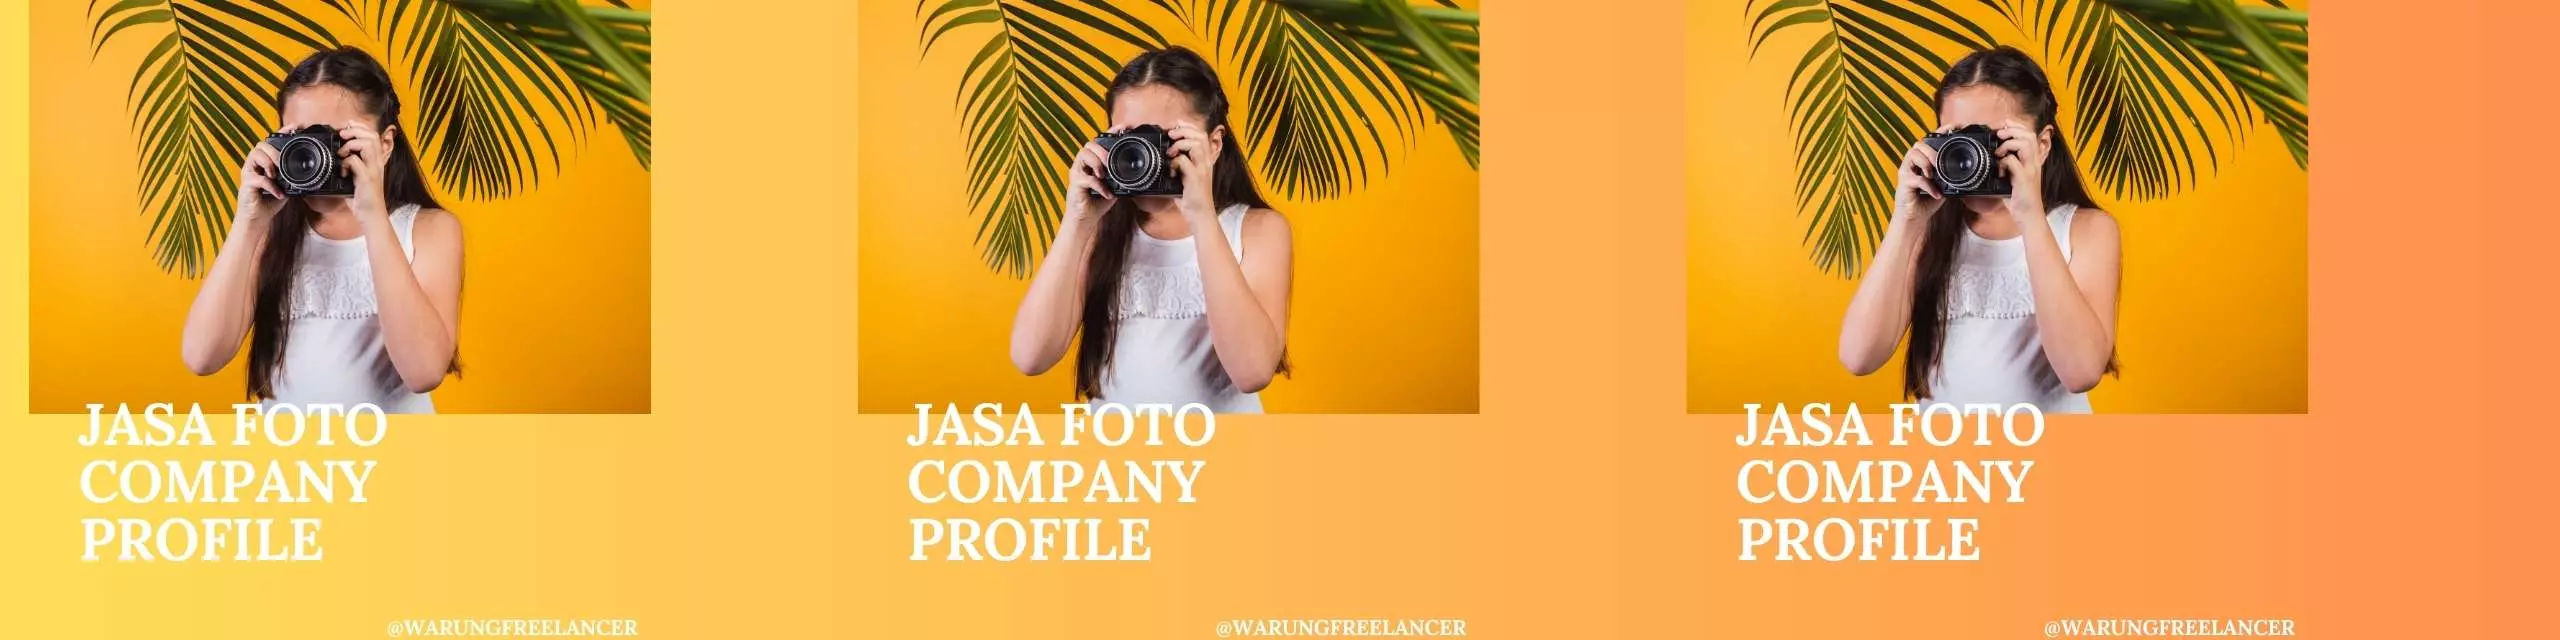 Jasa Foto Company Profile